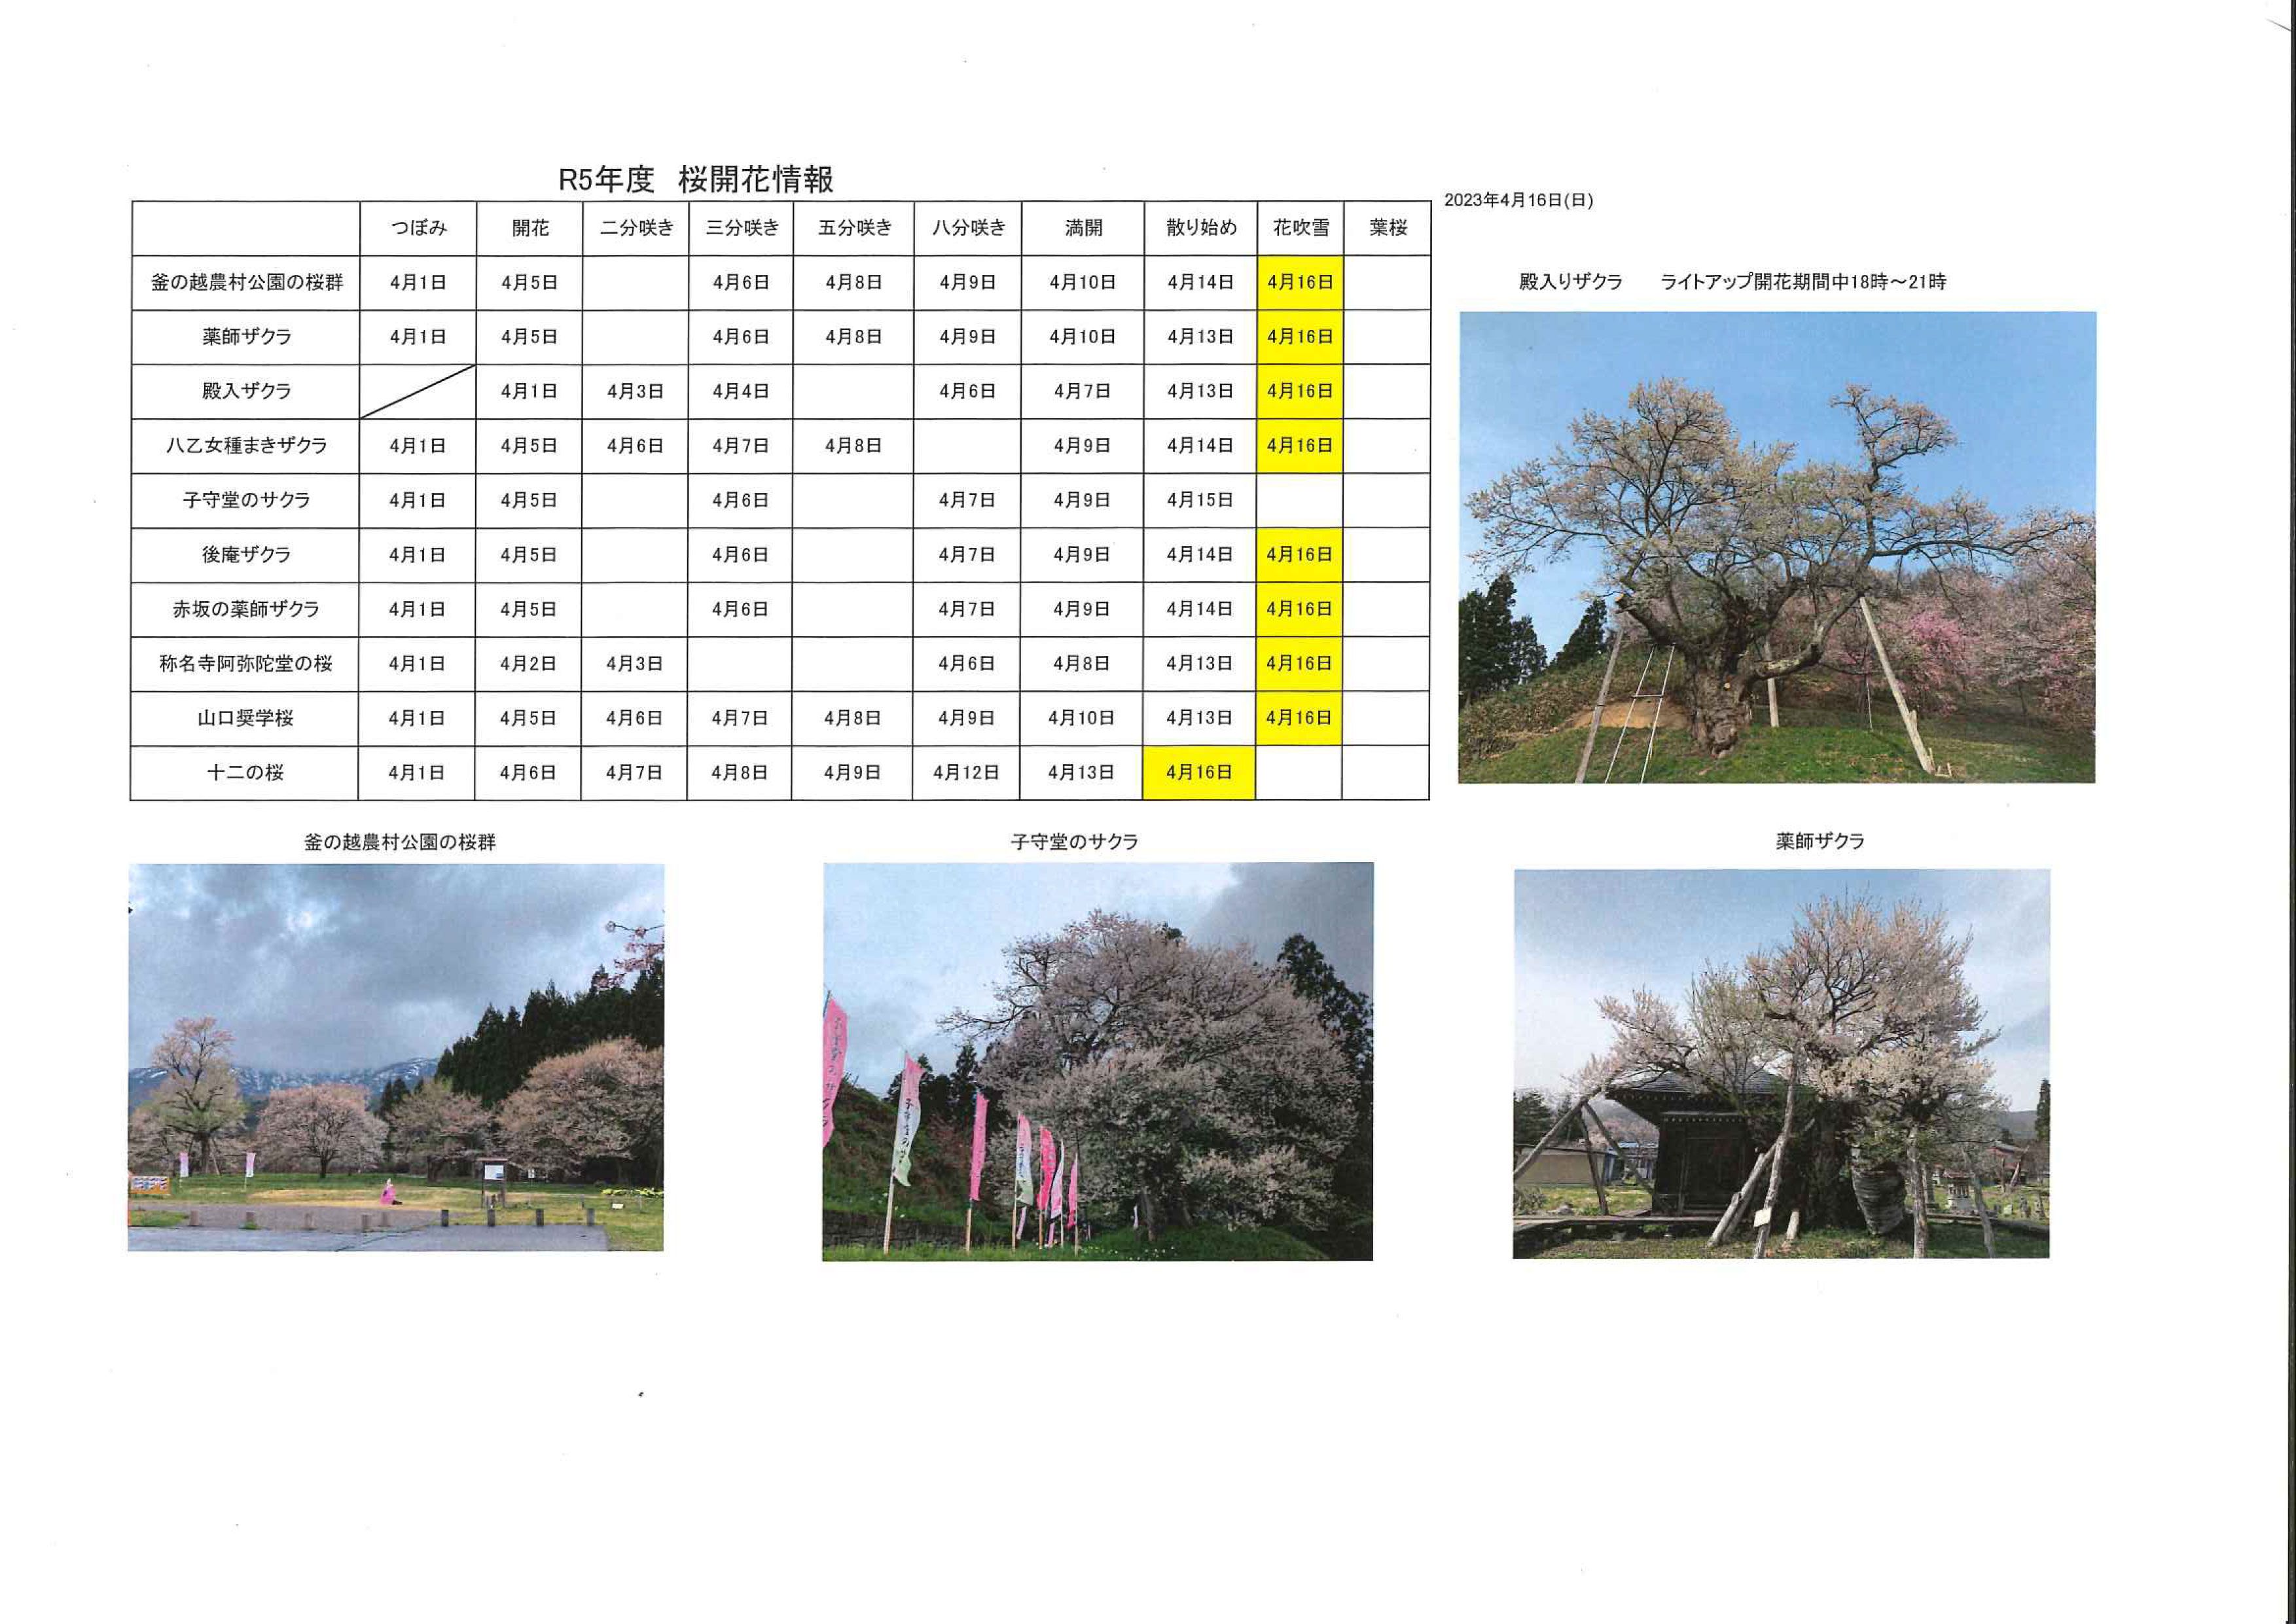 4月16日桜開花情報